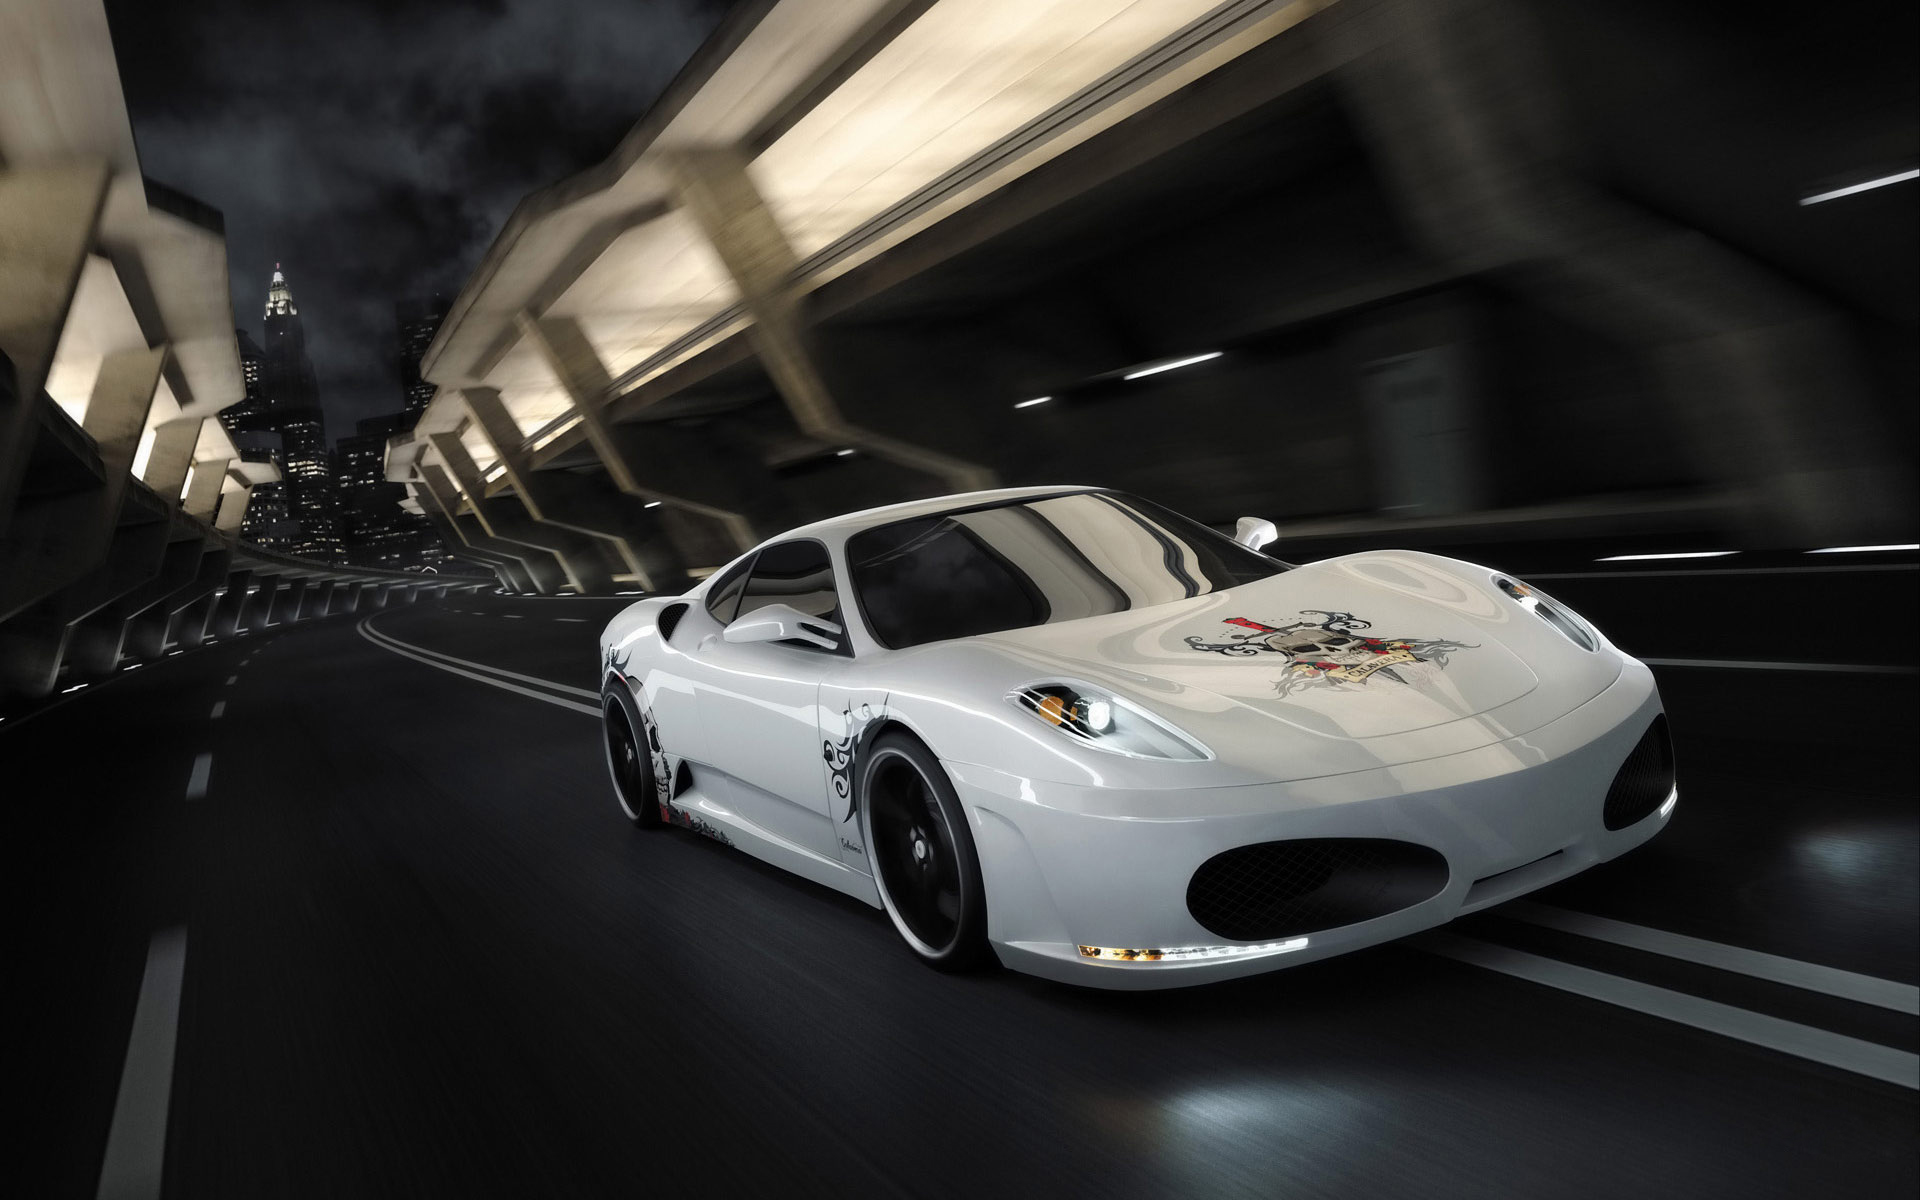 Download mobile wallpaper Prius, Ferrari, Vehicles, Car for free.